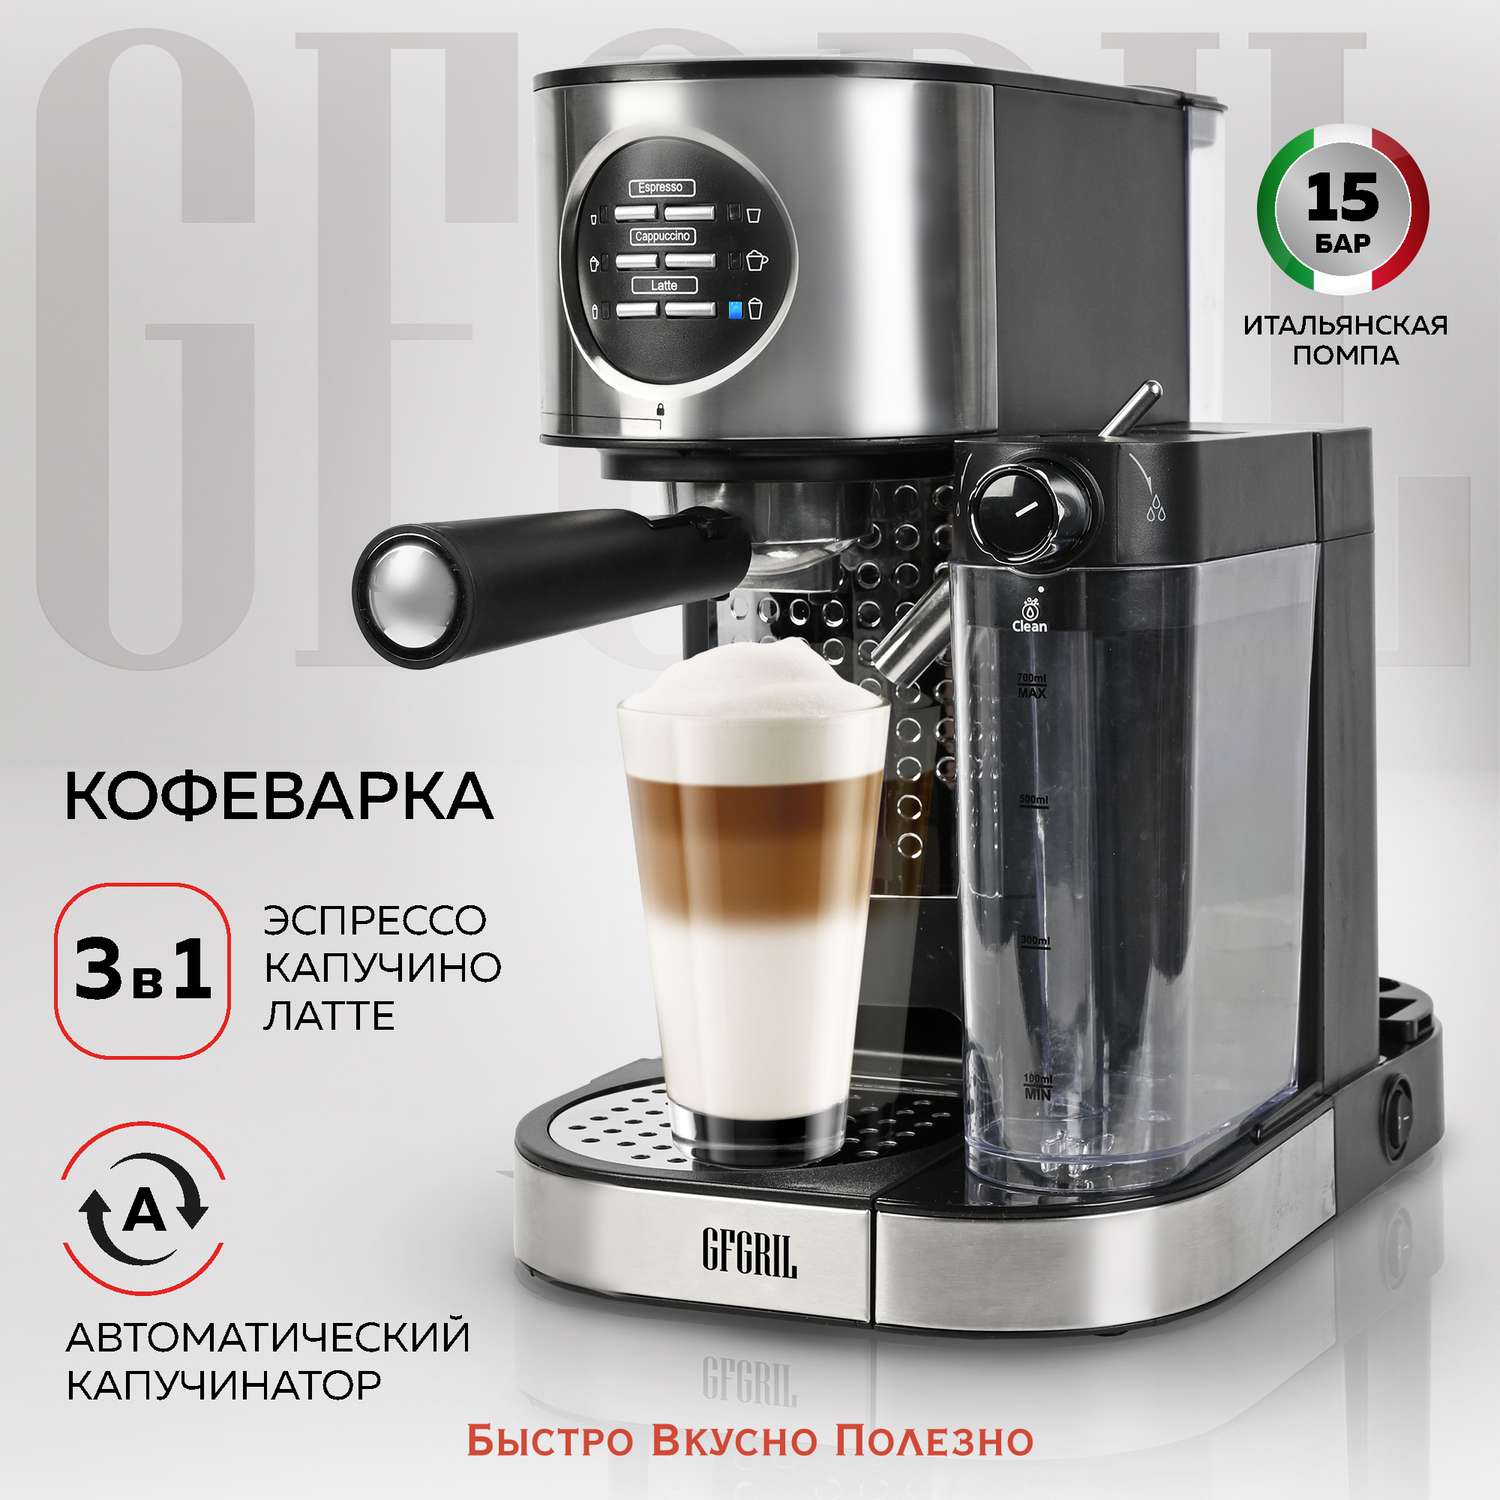 Кофеварка GFGRIL С автоматическим капучинатором 3 в 1 GFC-A300 Эспрессо-Капучино-Латте - фото 1